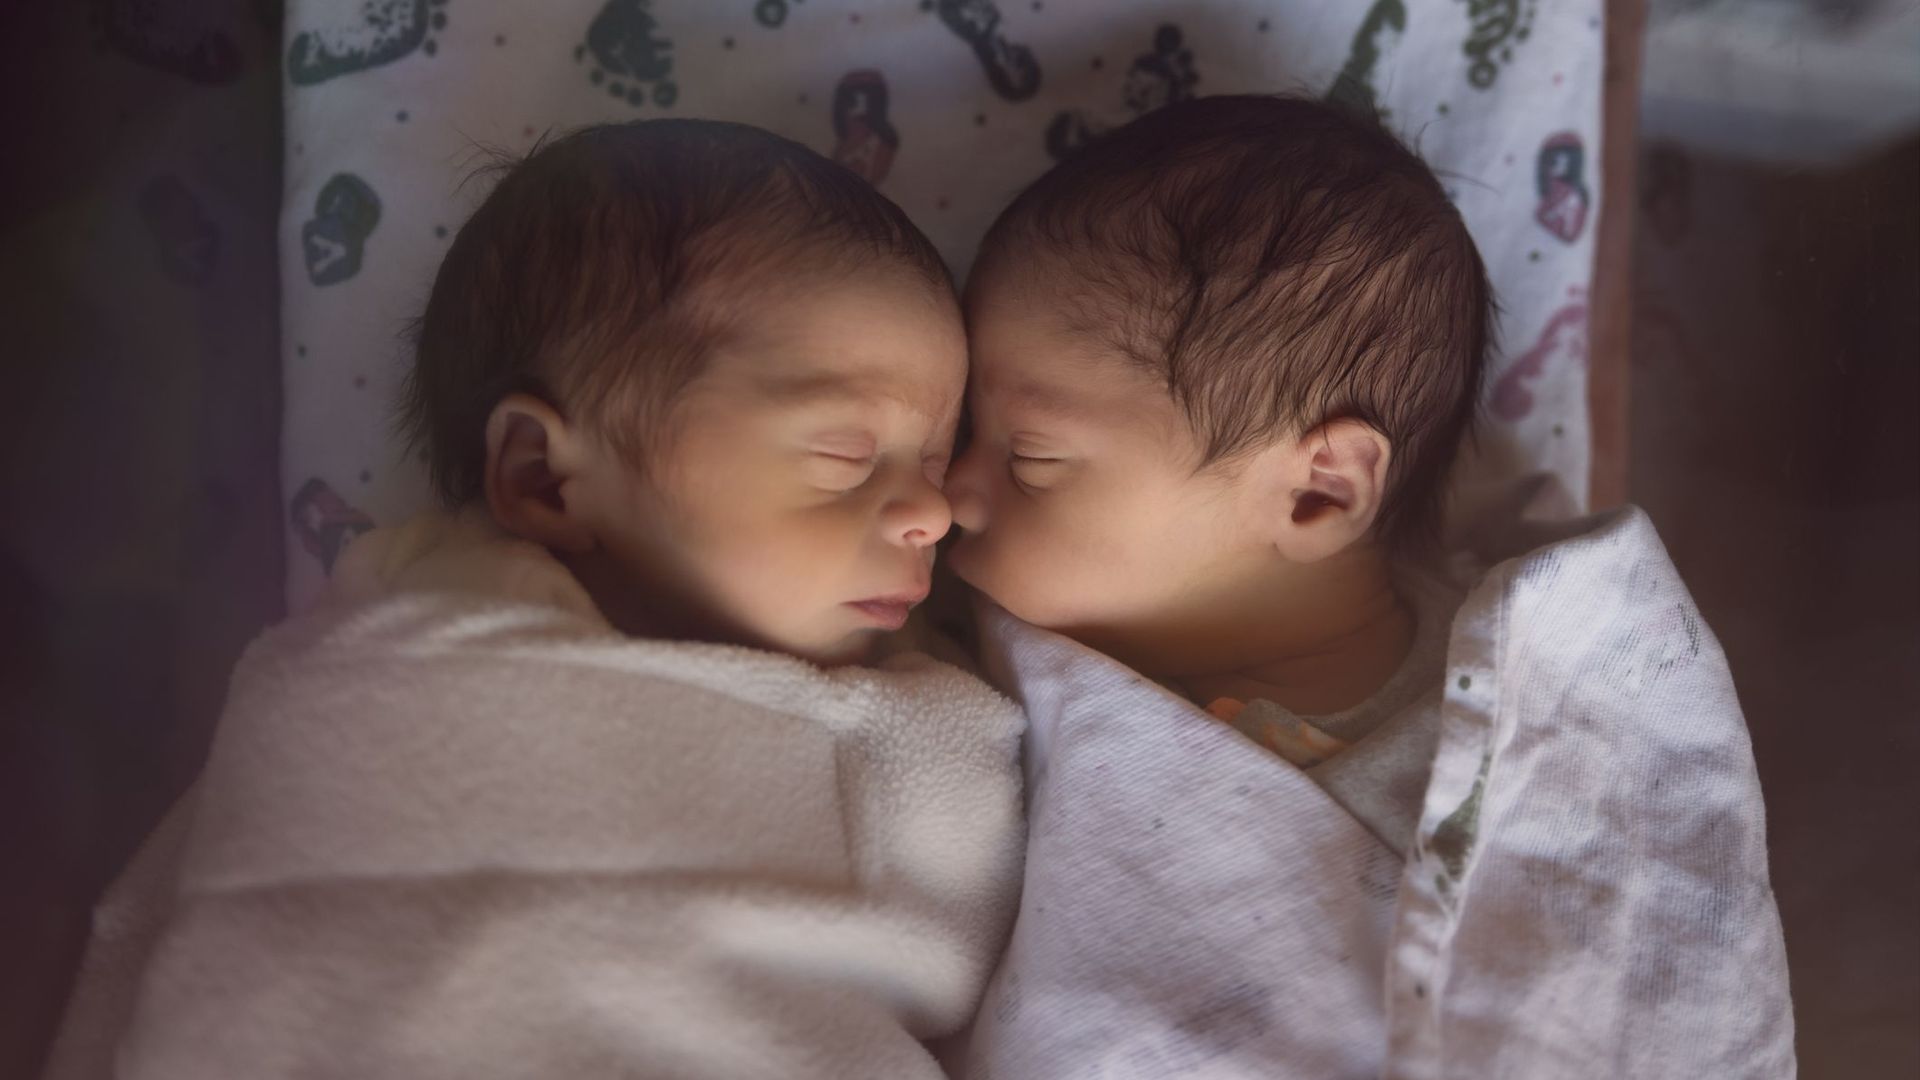 Les vrais jumeaux ne sont pas si identiques qu'on le pense, montre une étude